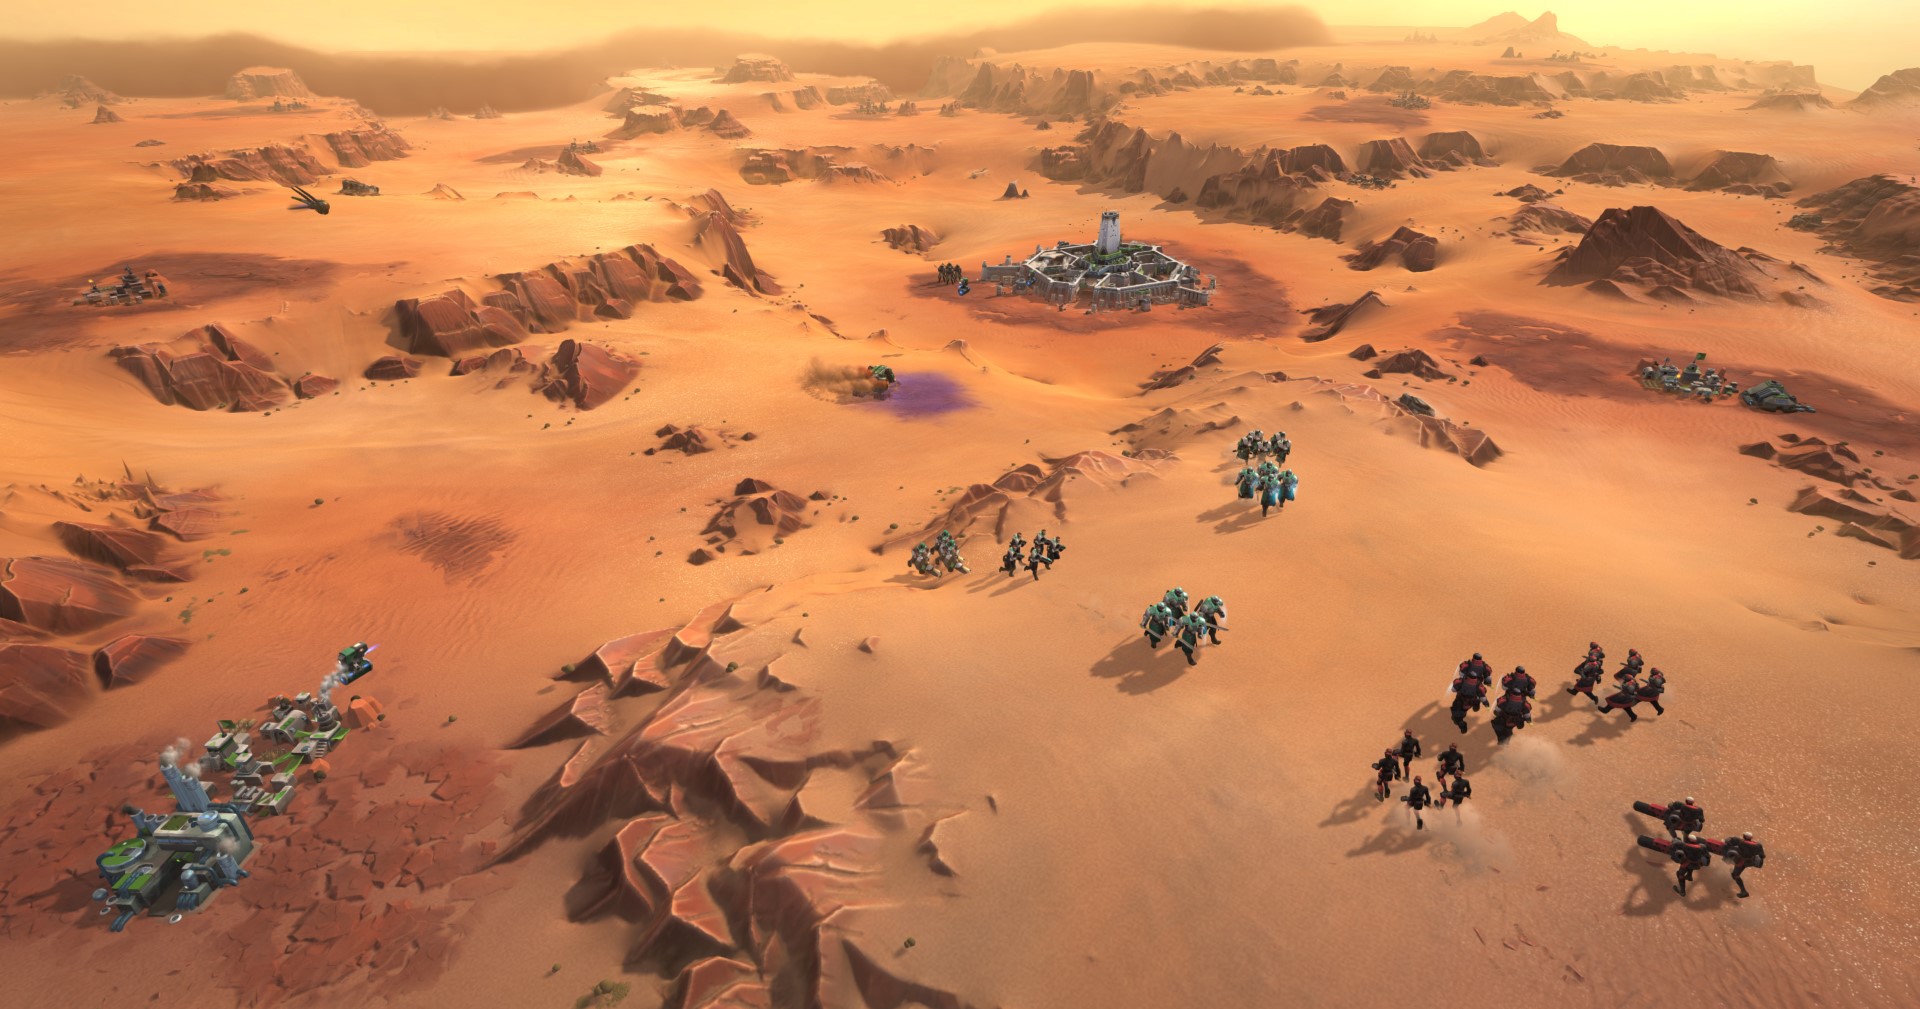 ผู้สร้าง Dune: Spice Wars จะเน้นทำให้ภาพในเกมมีสีสัน เพื่อไม่ให้มองทะเลทรายแล้วไม่เบื่อ